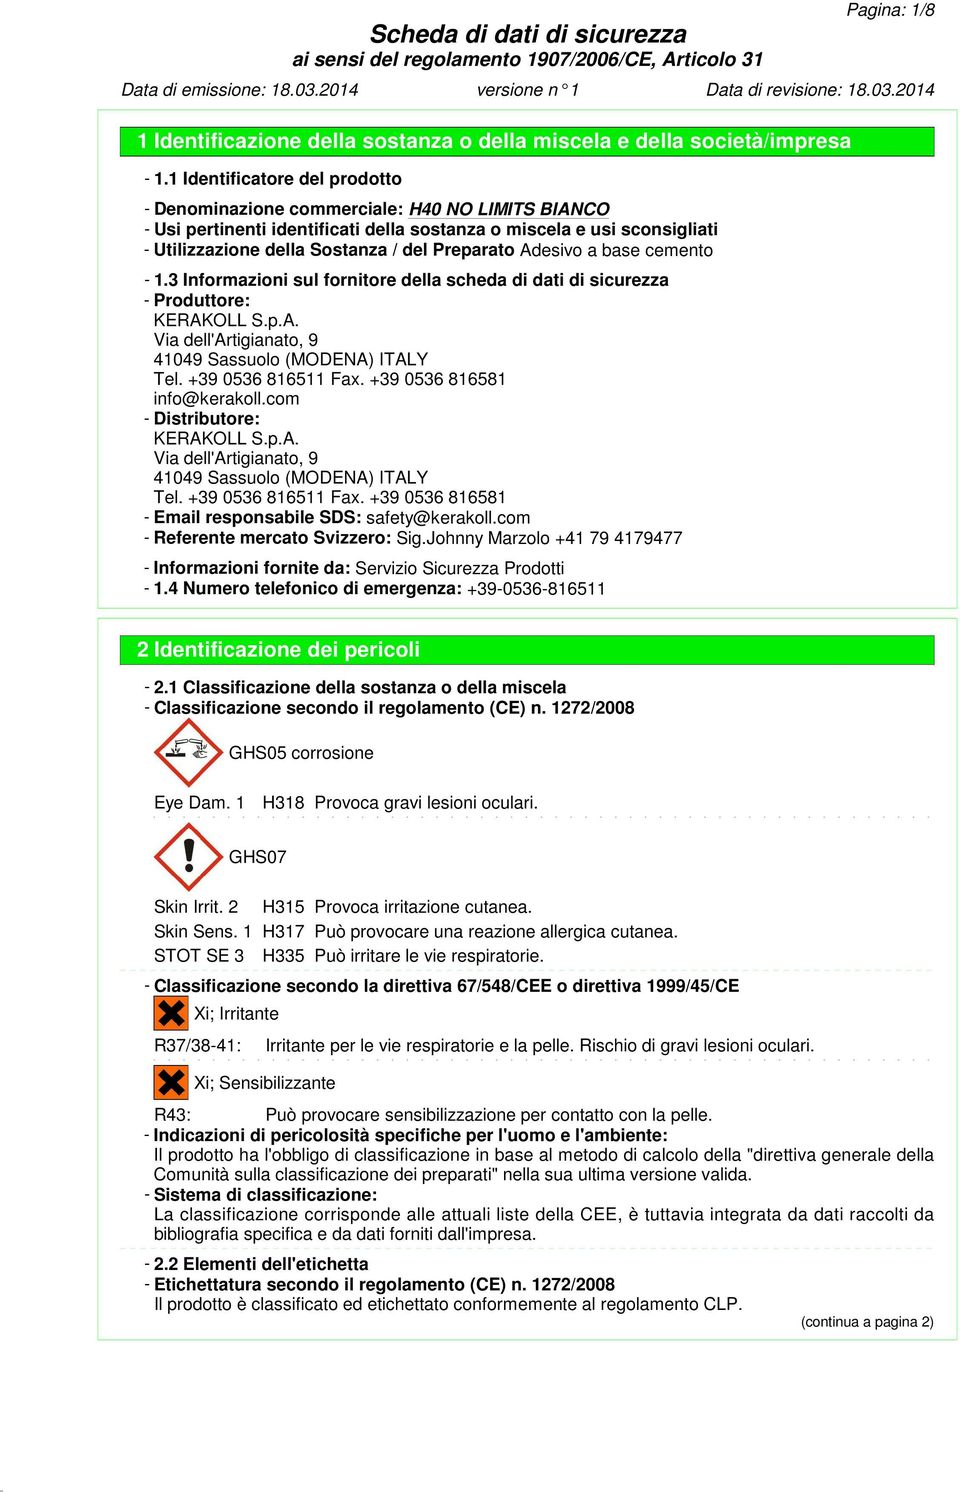 Preparato Adesivo a base cemento - 1.3 Informazioni sul fornitore della scheda di dati di sicurezza - Produttore: KERAKOLL S.p.A. Via dell'artigianato, 9 41049 Sassuolo (MODENA) ITALY Tel.